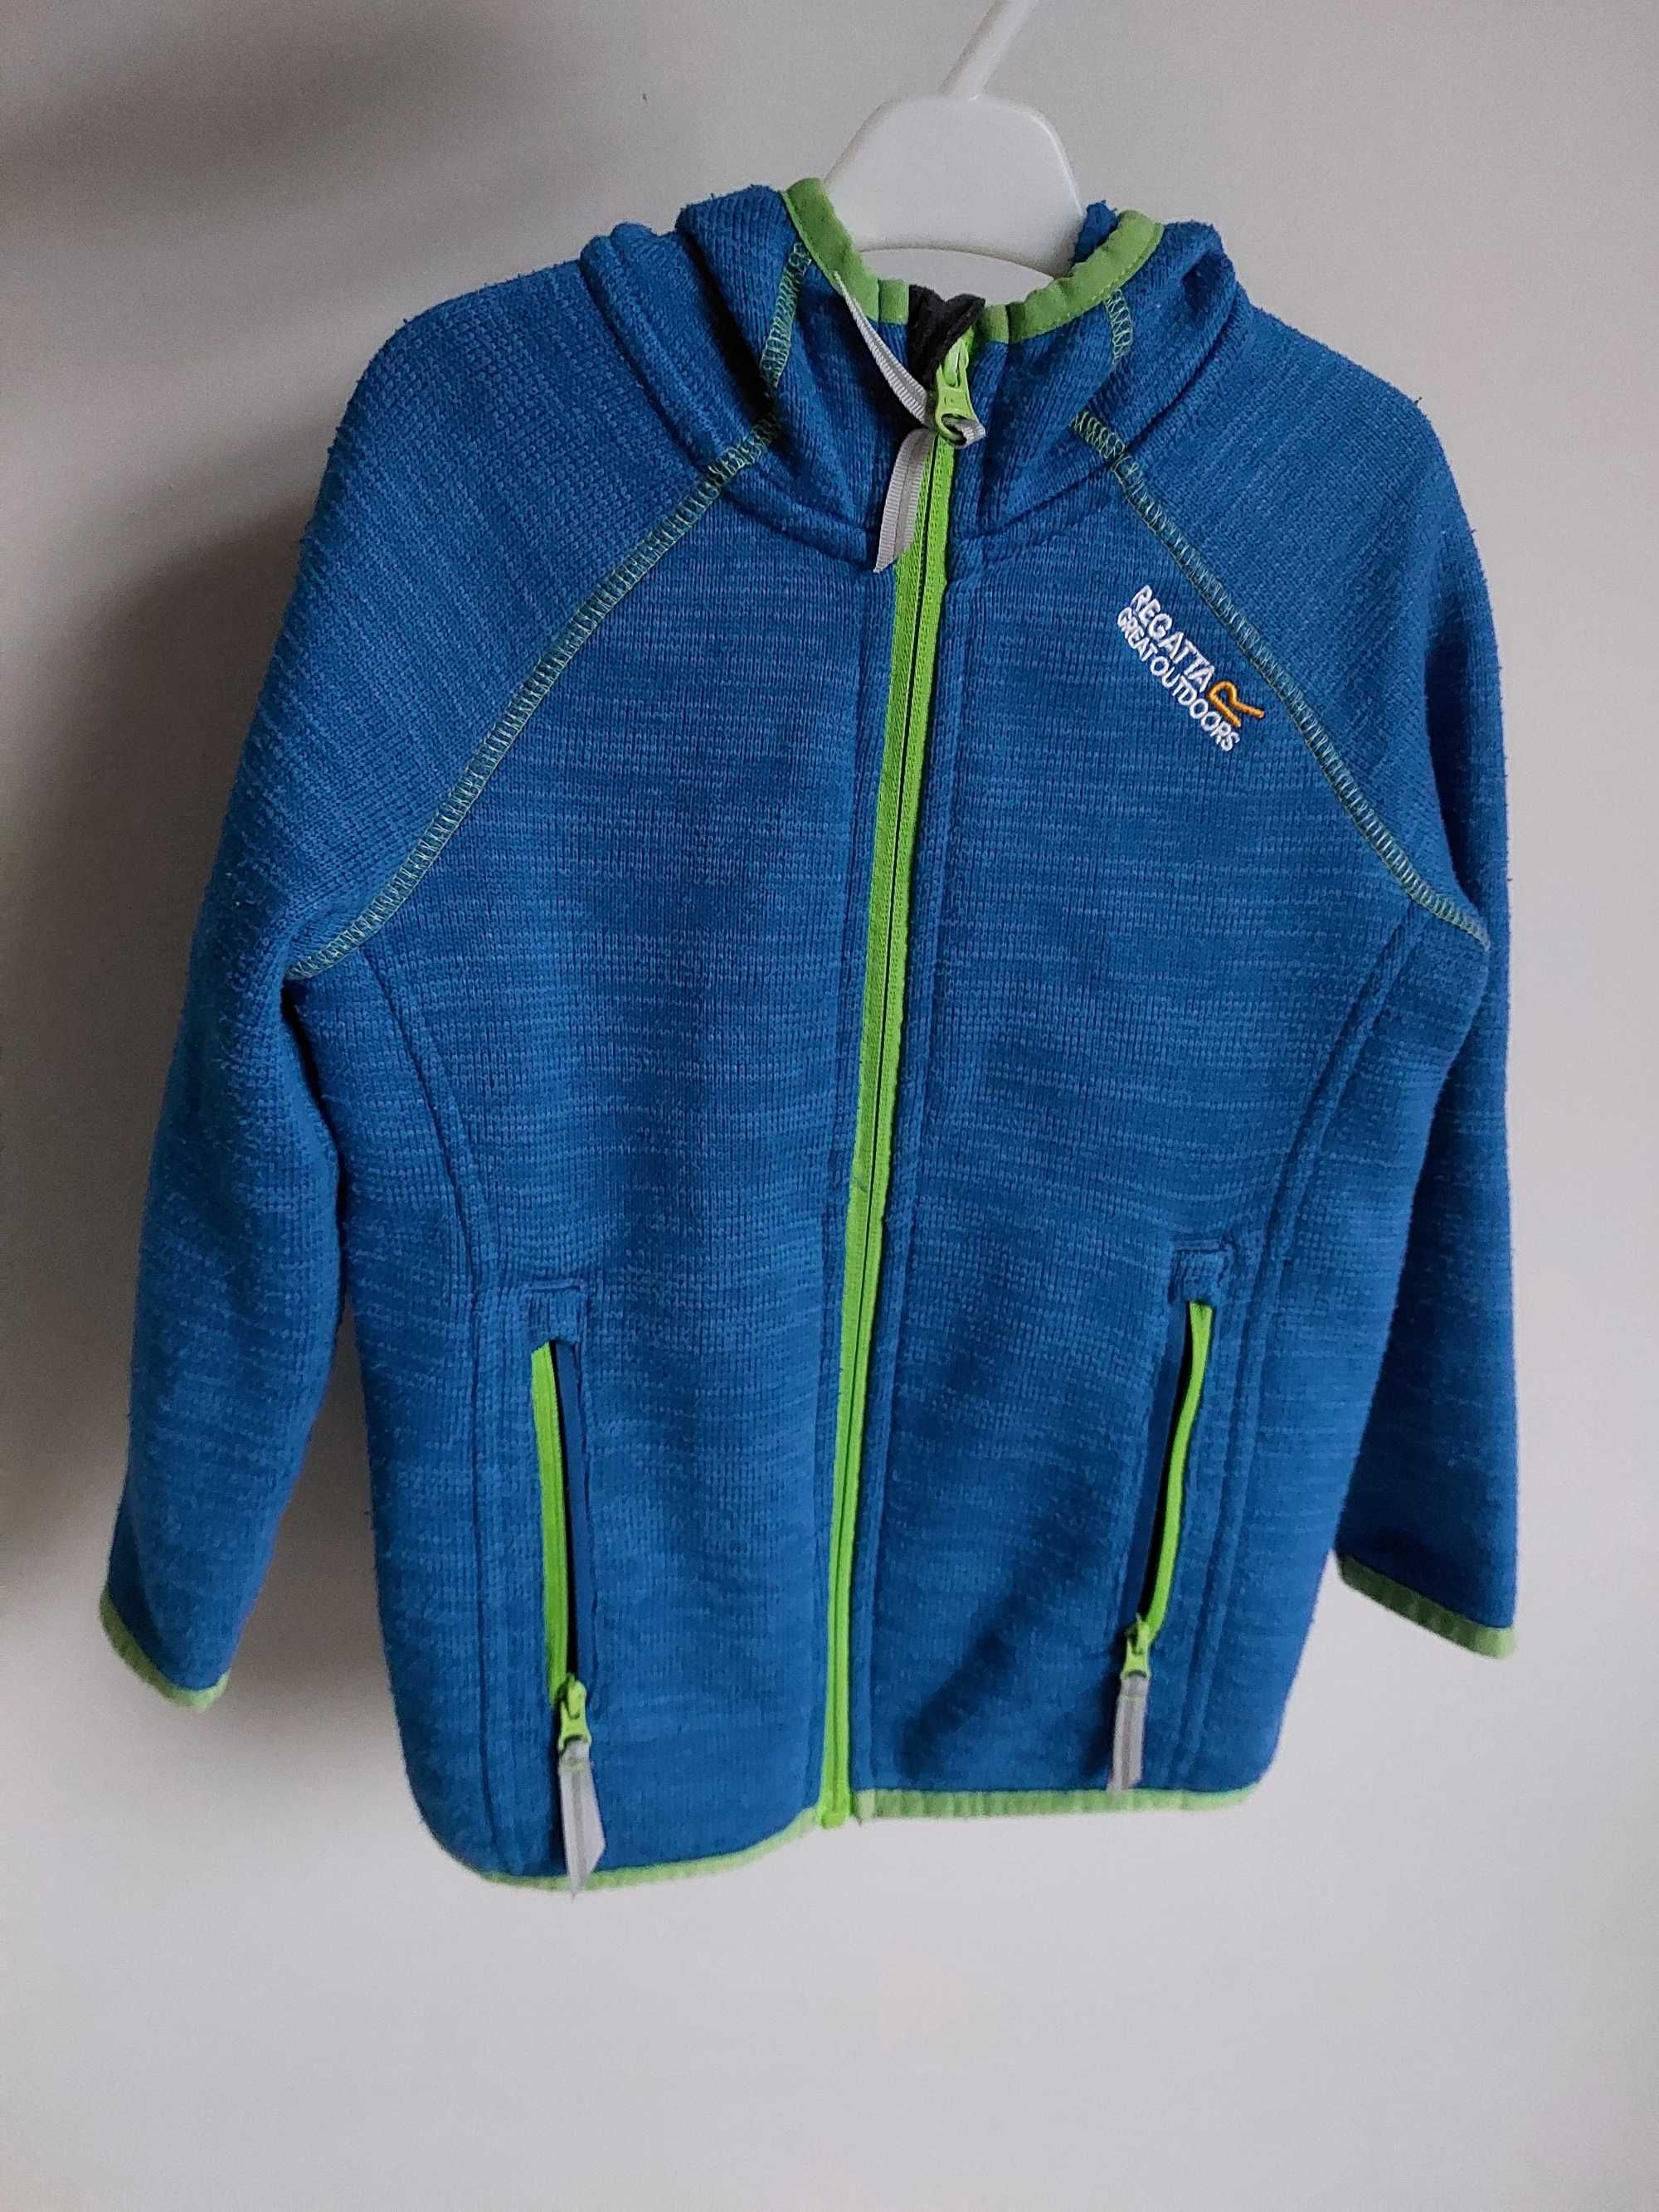 Paka dla chłopca 98/104 h&m Benetton Zara Kappahl spodnie bluza tshirt